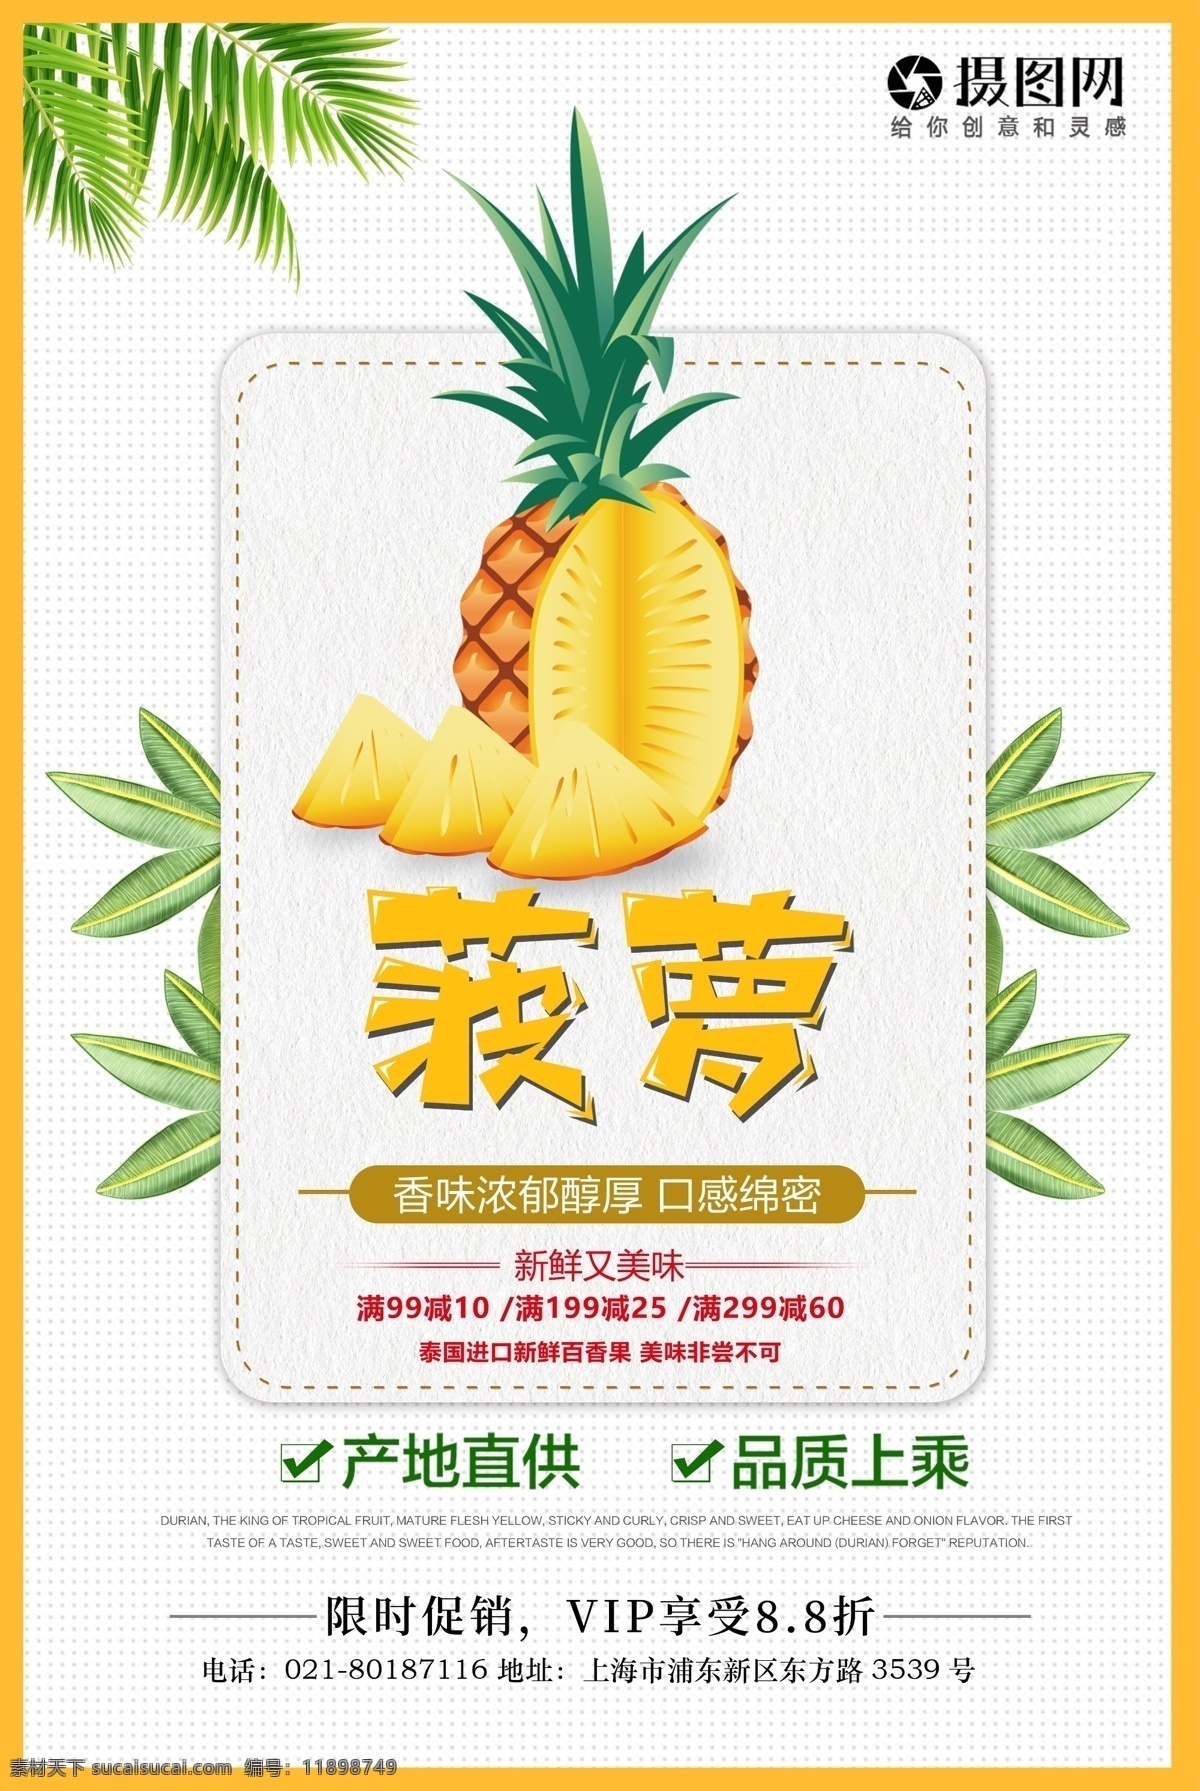 新鲜 水果 菠萝 促销 海报 果蔬 菠萝海报 菠萝广告 菠萝图片 水果海报 热带水果 水果广告 新鲜水果